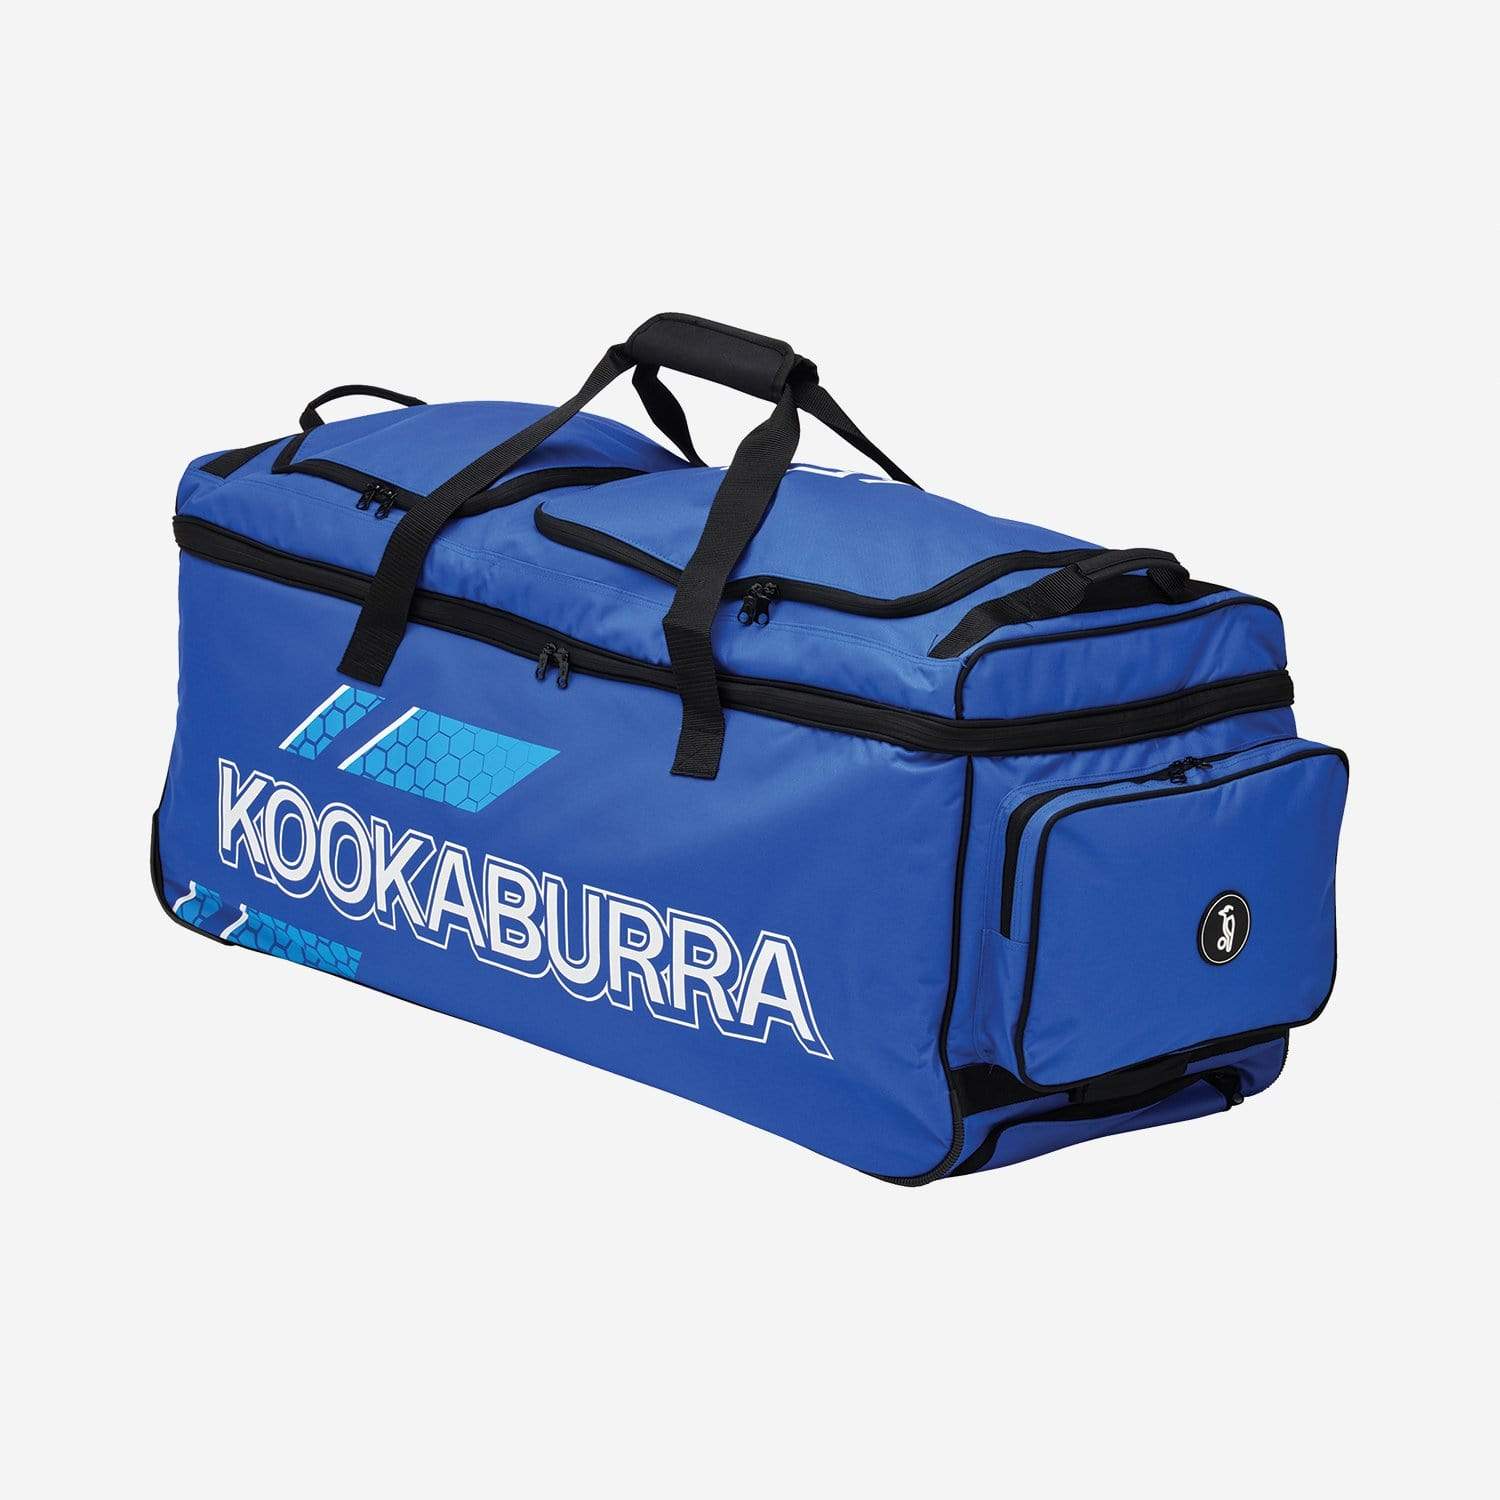 Kookaburra Cricket Bags Blue Kookaburra Pro 1.0 Wheelie Cricket Bag